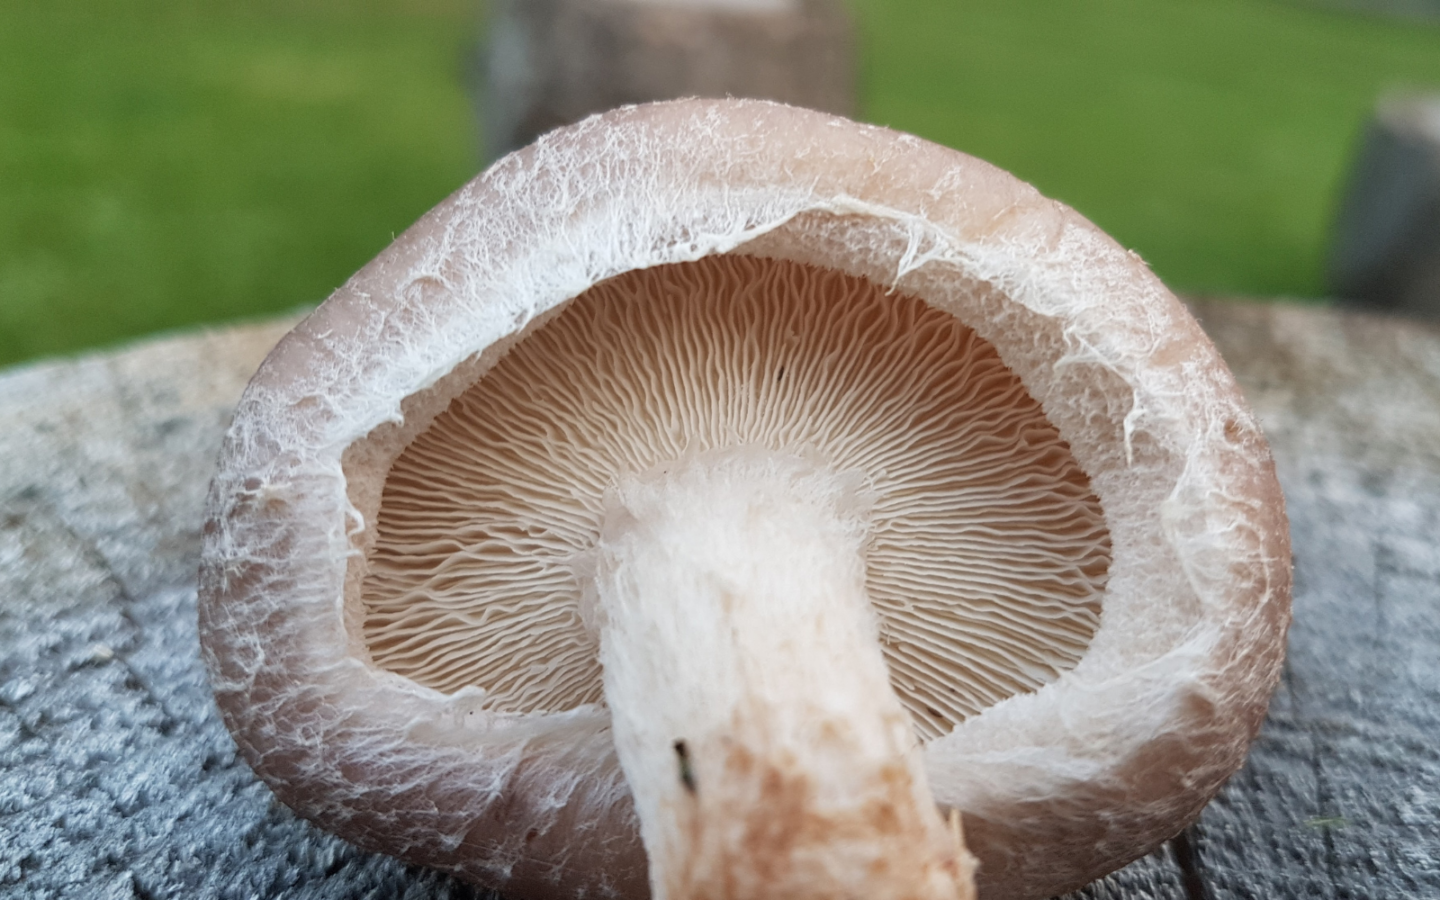 Growing Shiitake Mushrooms - FreshCap Mushrooms